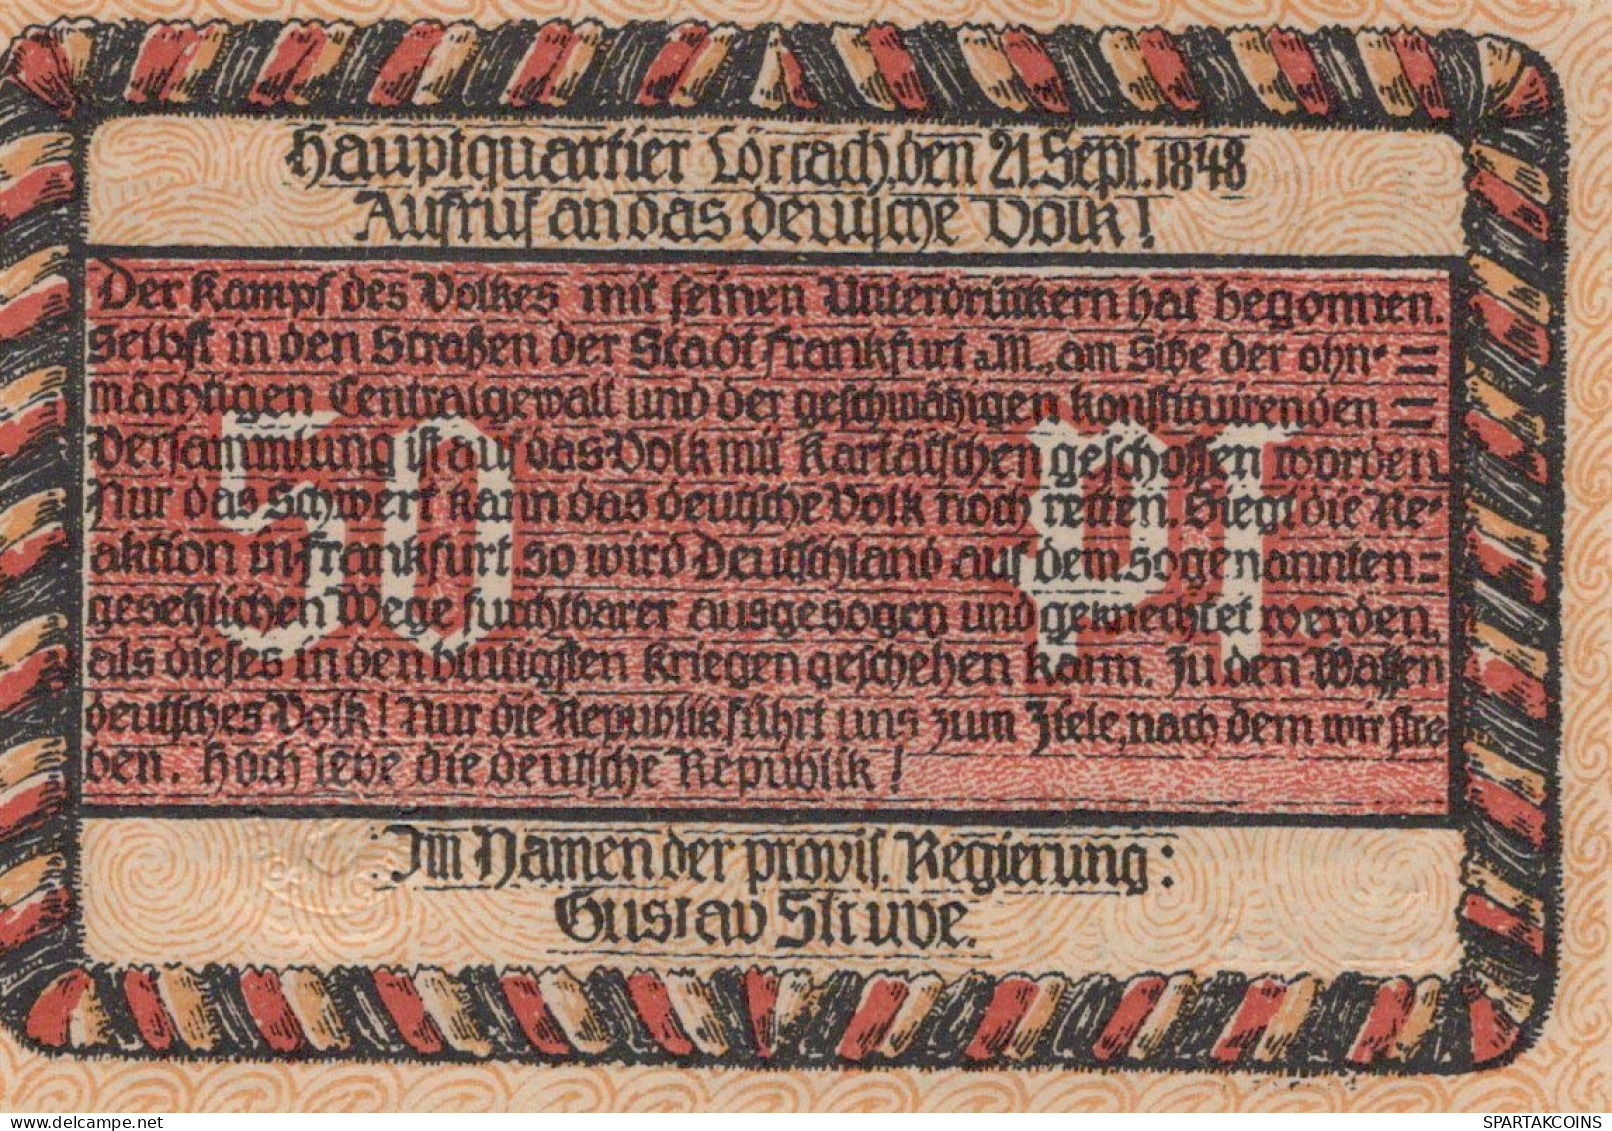 50 PFENNIG 1922 Stadt LoRRACH Baden UNC DEUTSCHLAND Notgeld Banknote #PC488 - [11] Emisiones Locales